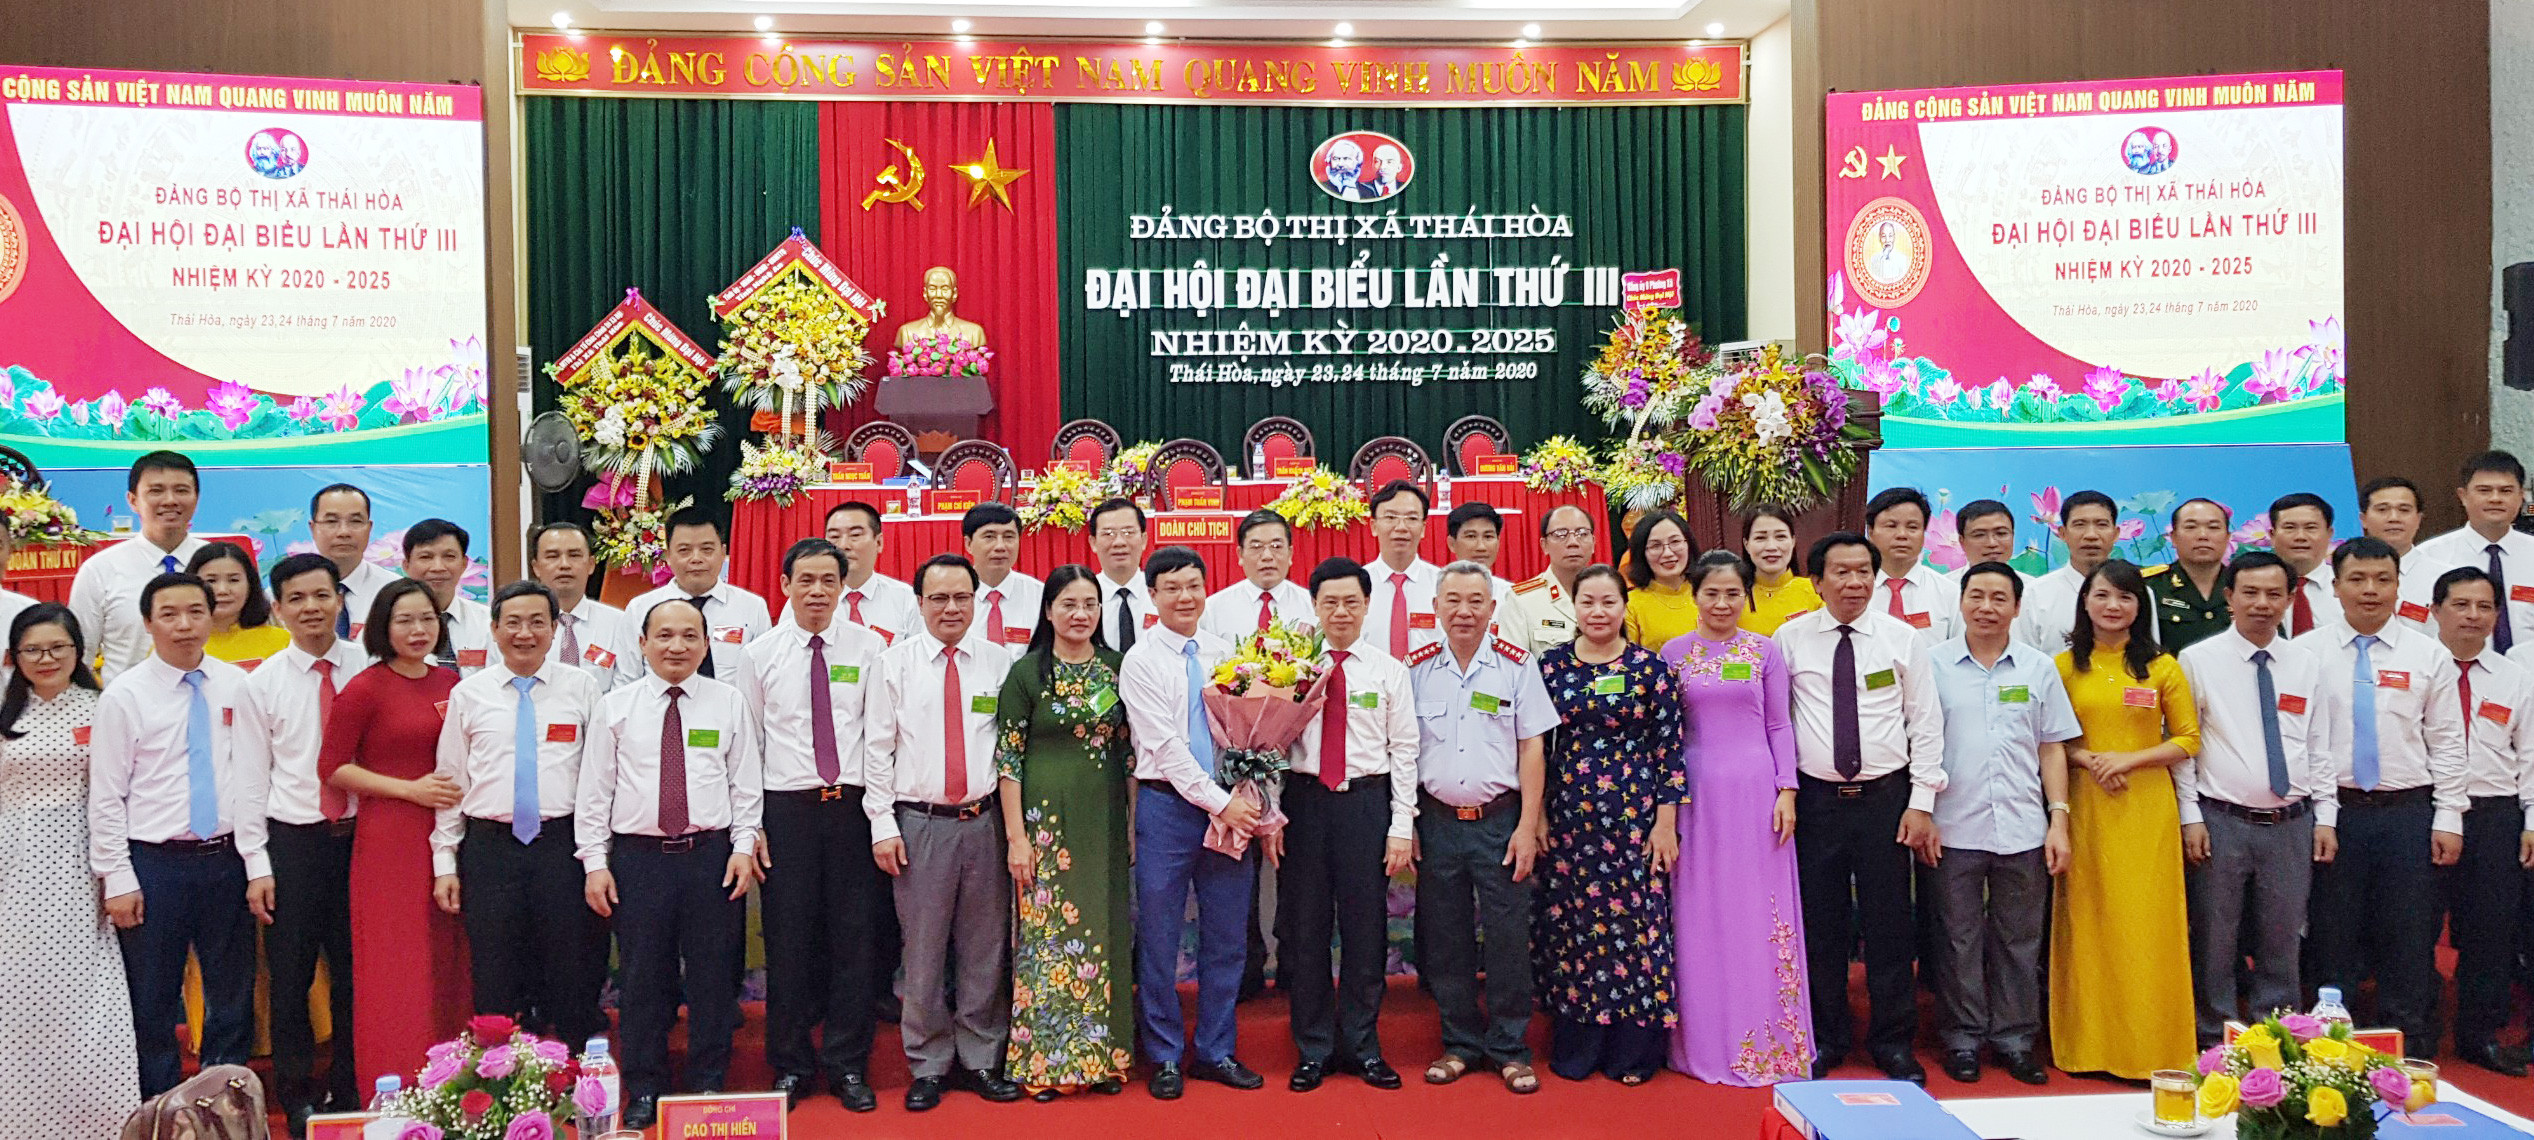 Các đồng chí lãnh đạo tỉnh và các sở, ban, ngành cấp tỉnh tặng hoa chúc mừng Ban Chấp hành Đảng bộ thị xã Thái Hòa khóa III, nhiệm kỳ 2020 - 2025. Ảnh: Mai Hoa